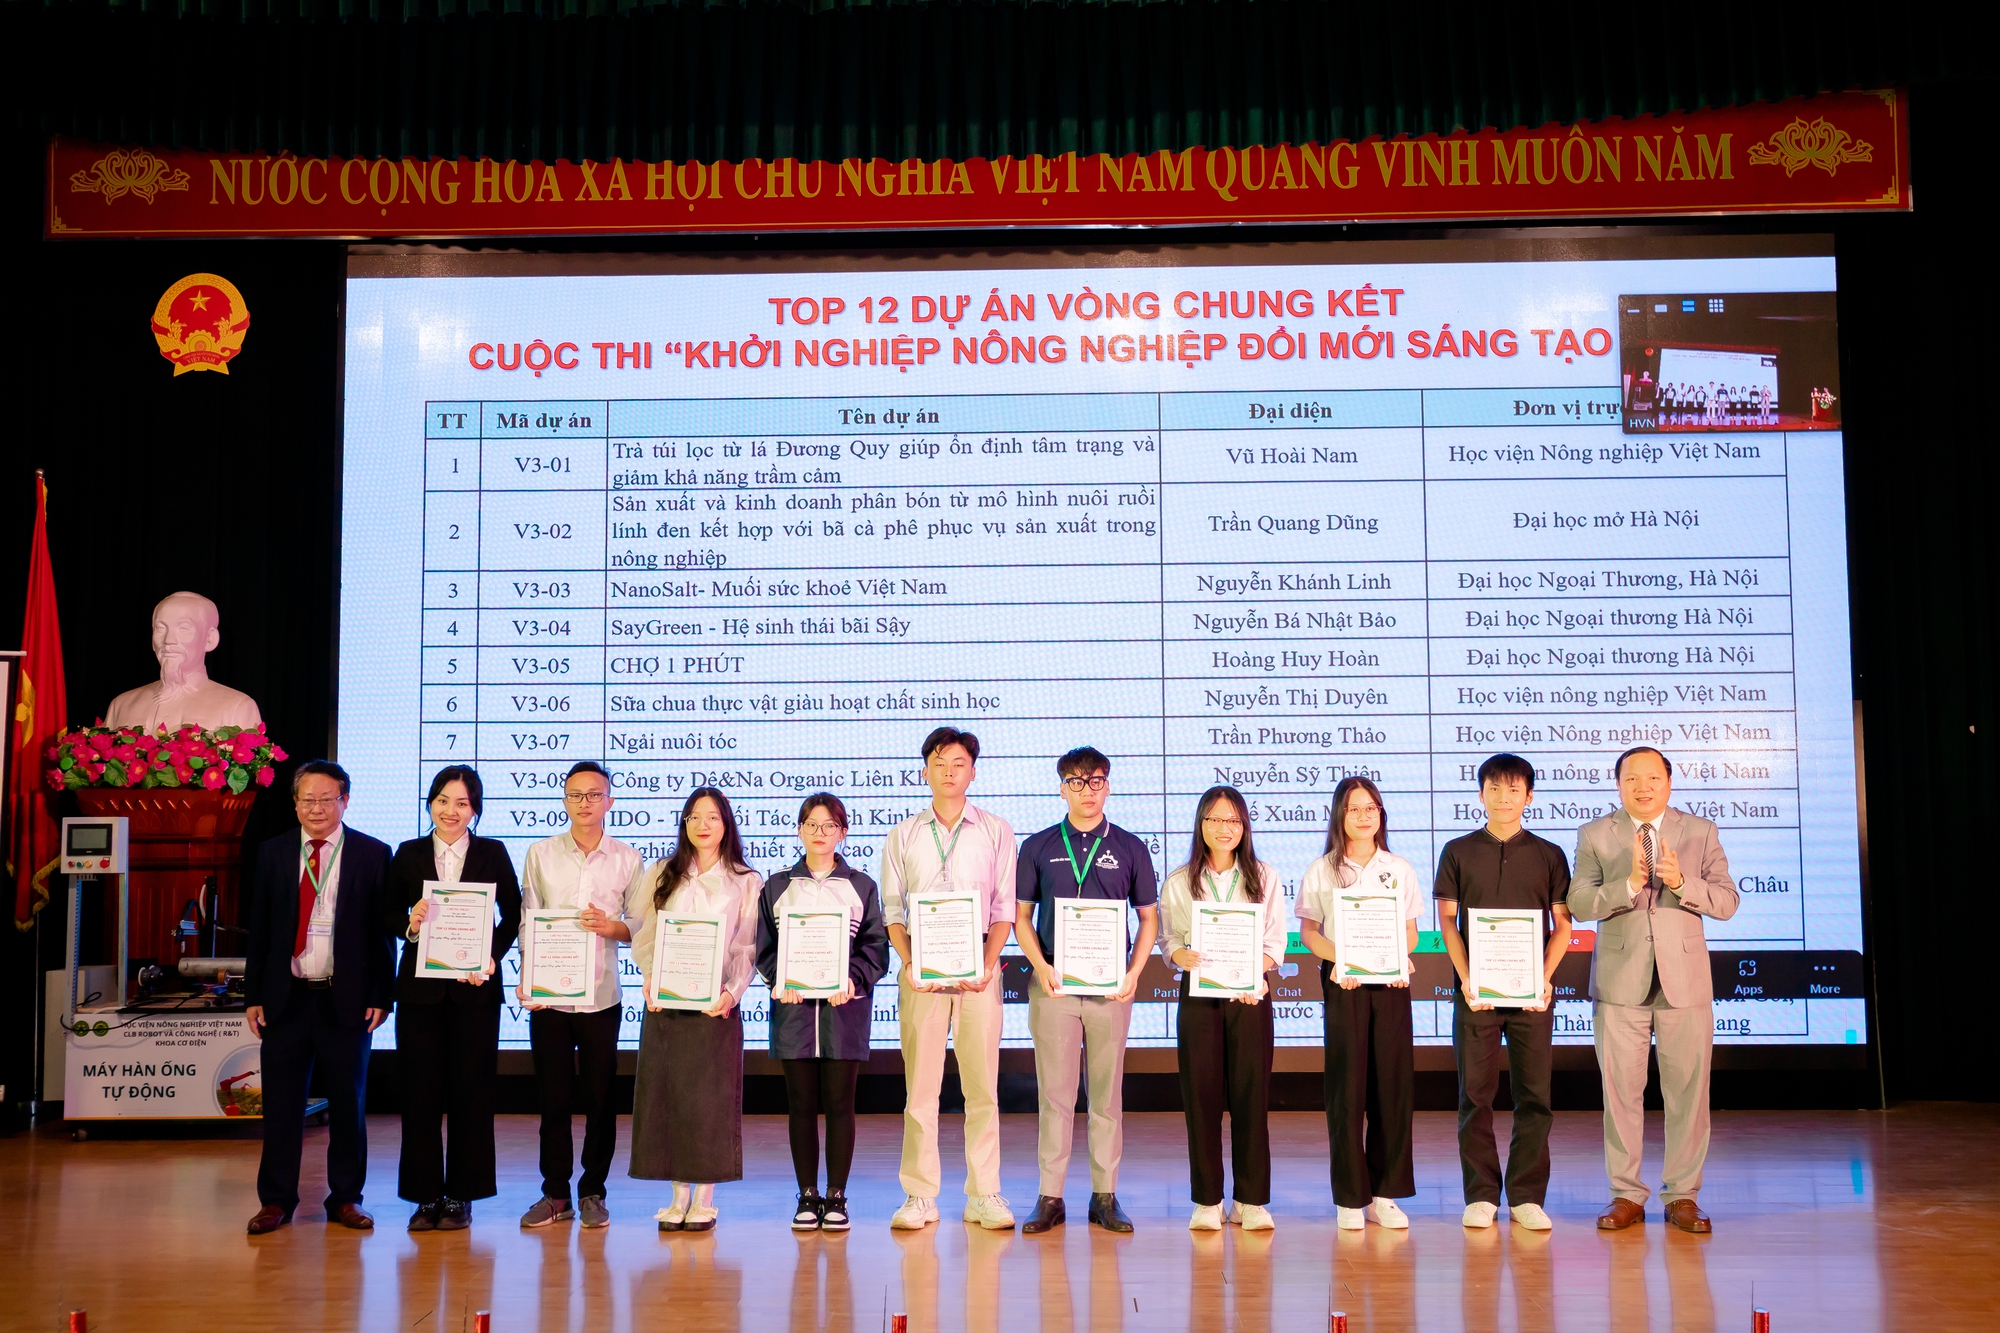 Chế tạo máy hàn tự động, sinh viên Học viện Nông nghiệp Việt Nam giành giải Nhất cuộc thi khởi nghiệp - Ảnh 5.